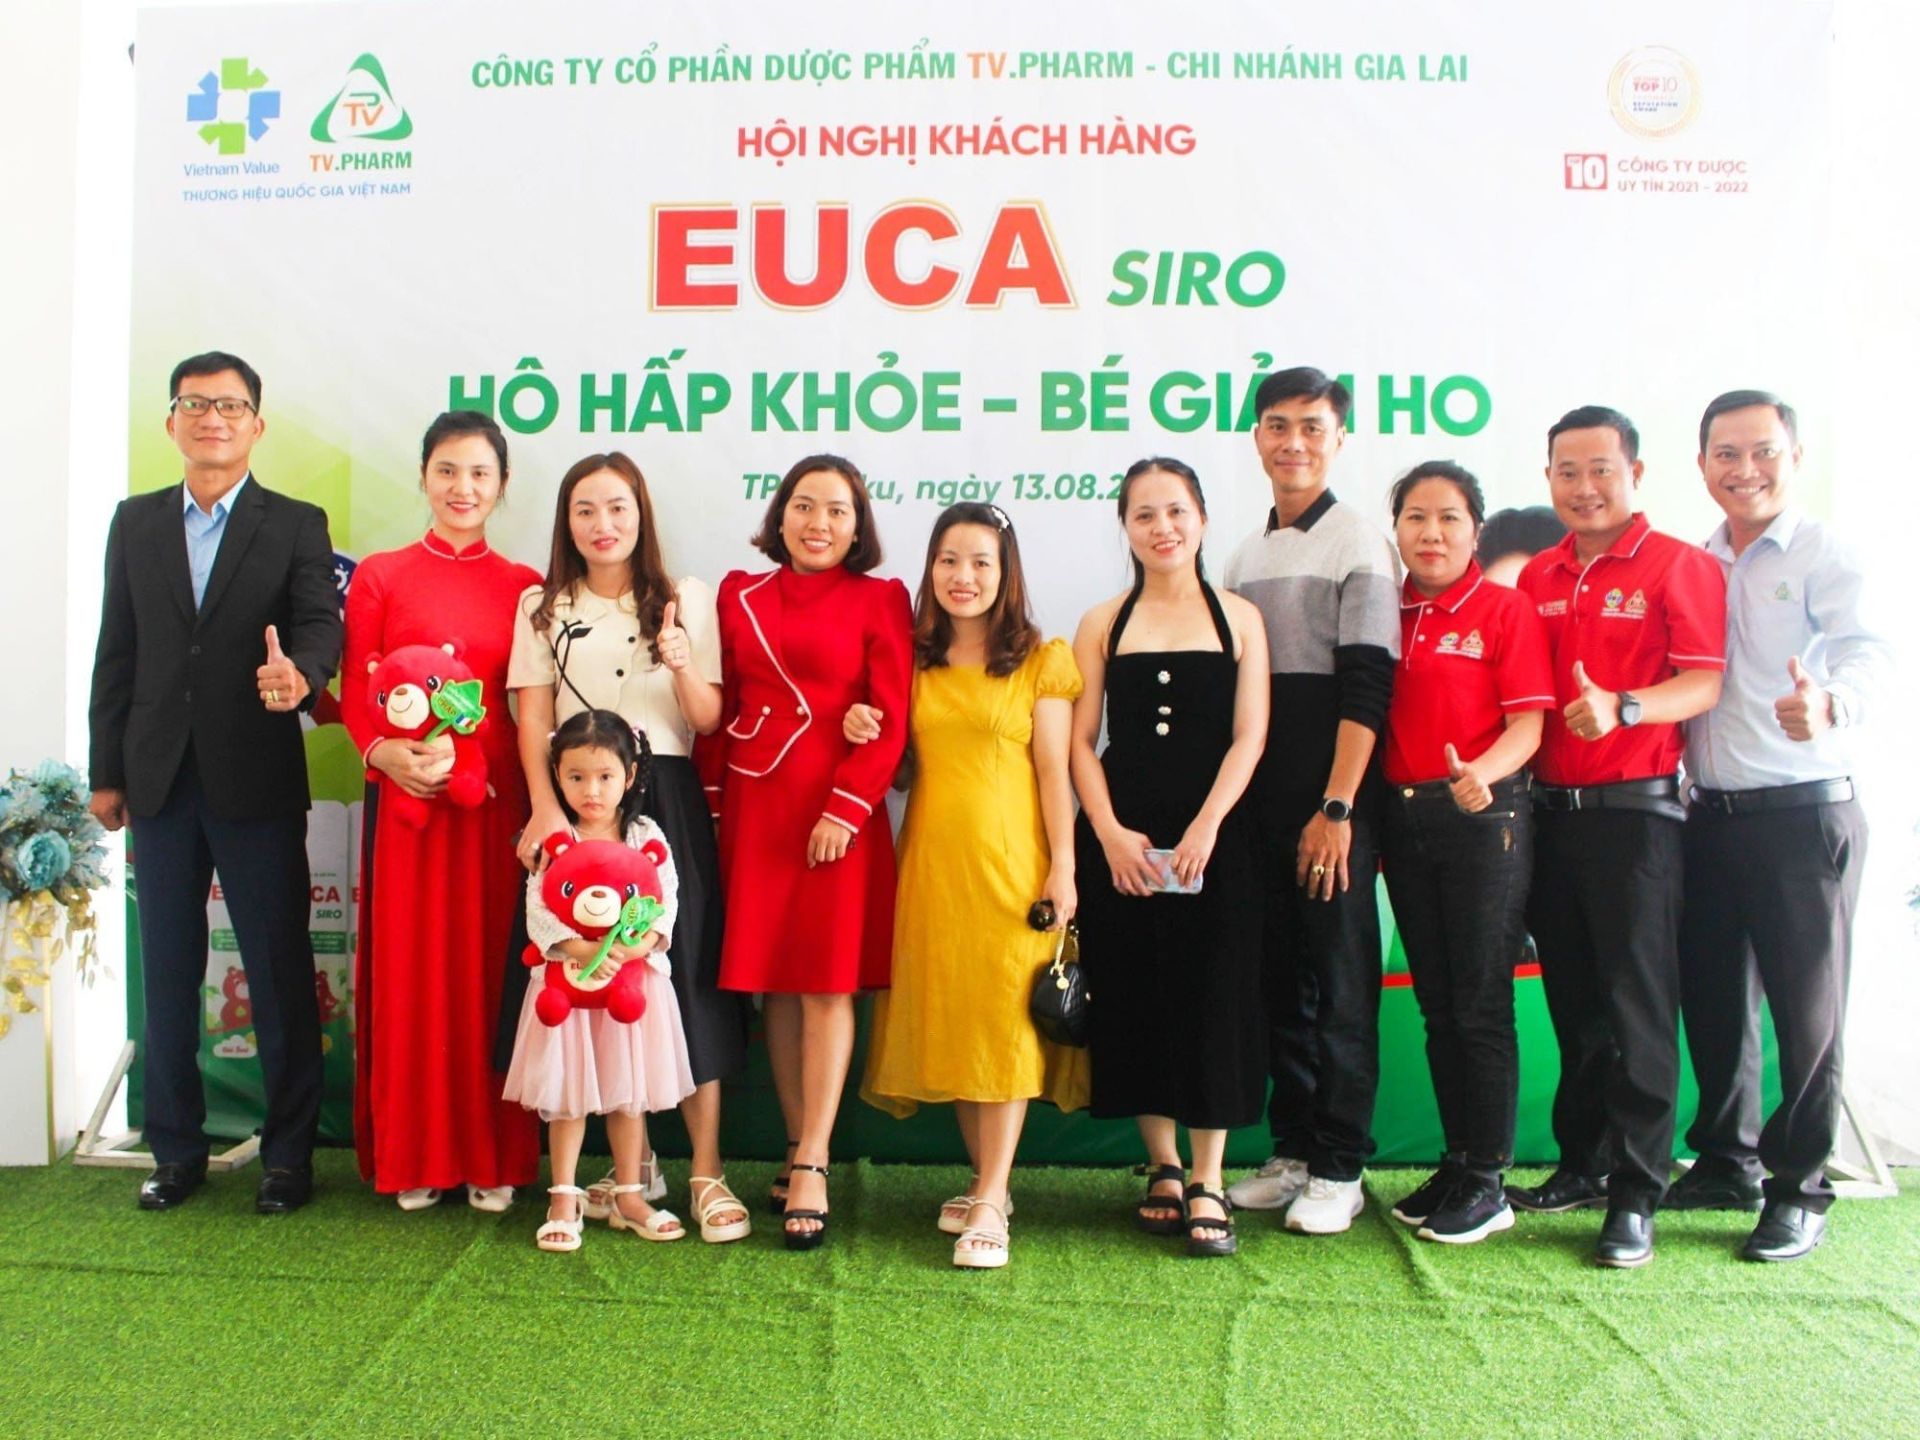 Chuỗi hội nghị khách hàng EUCA Siro được TV.PHARM tổ chức trên toàn quốc